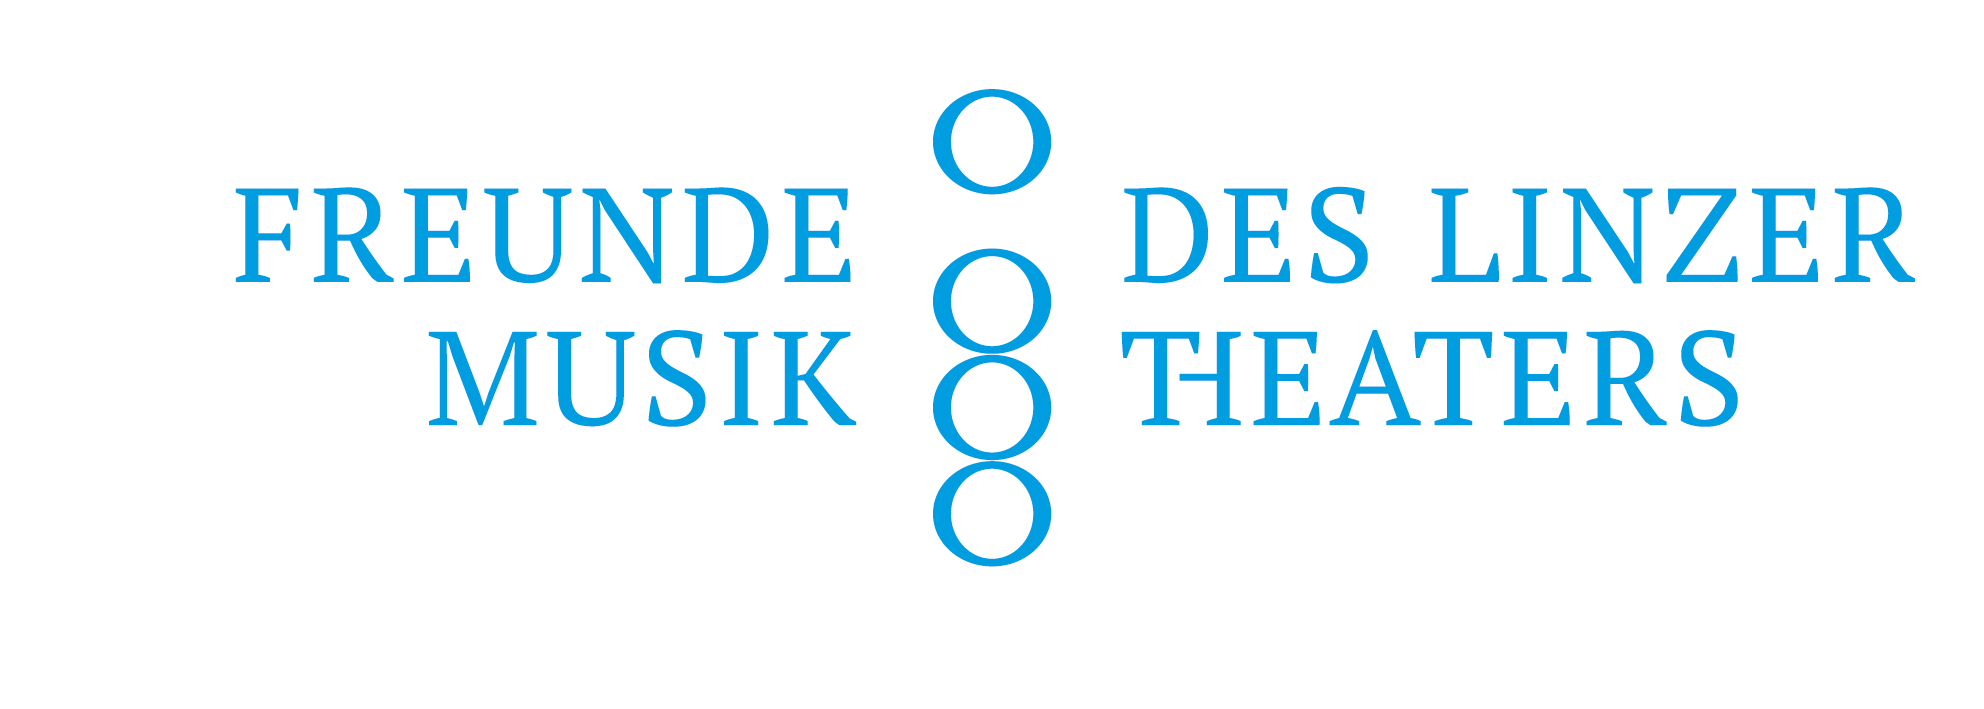 Logo_Freunde-des-Linzer-Musiktheaters_FARBIG_HoheAufloesung (4)